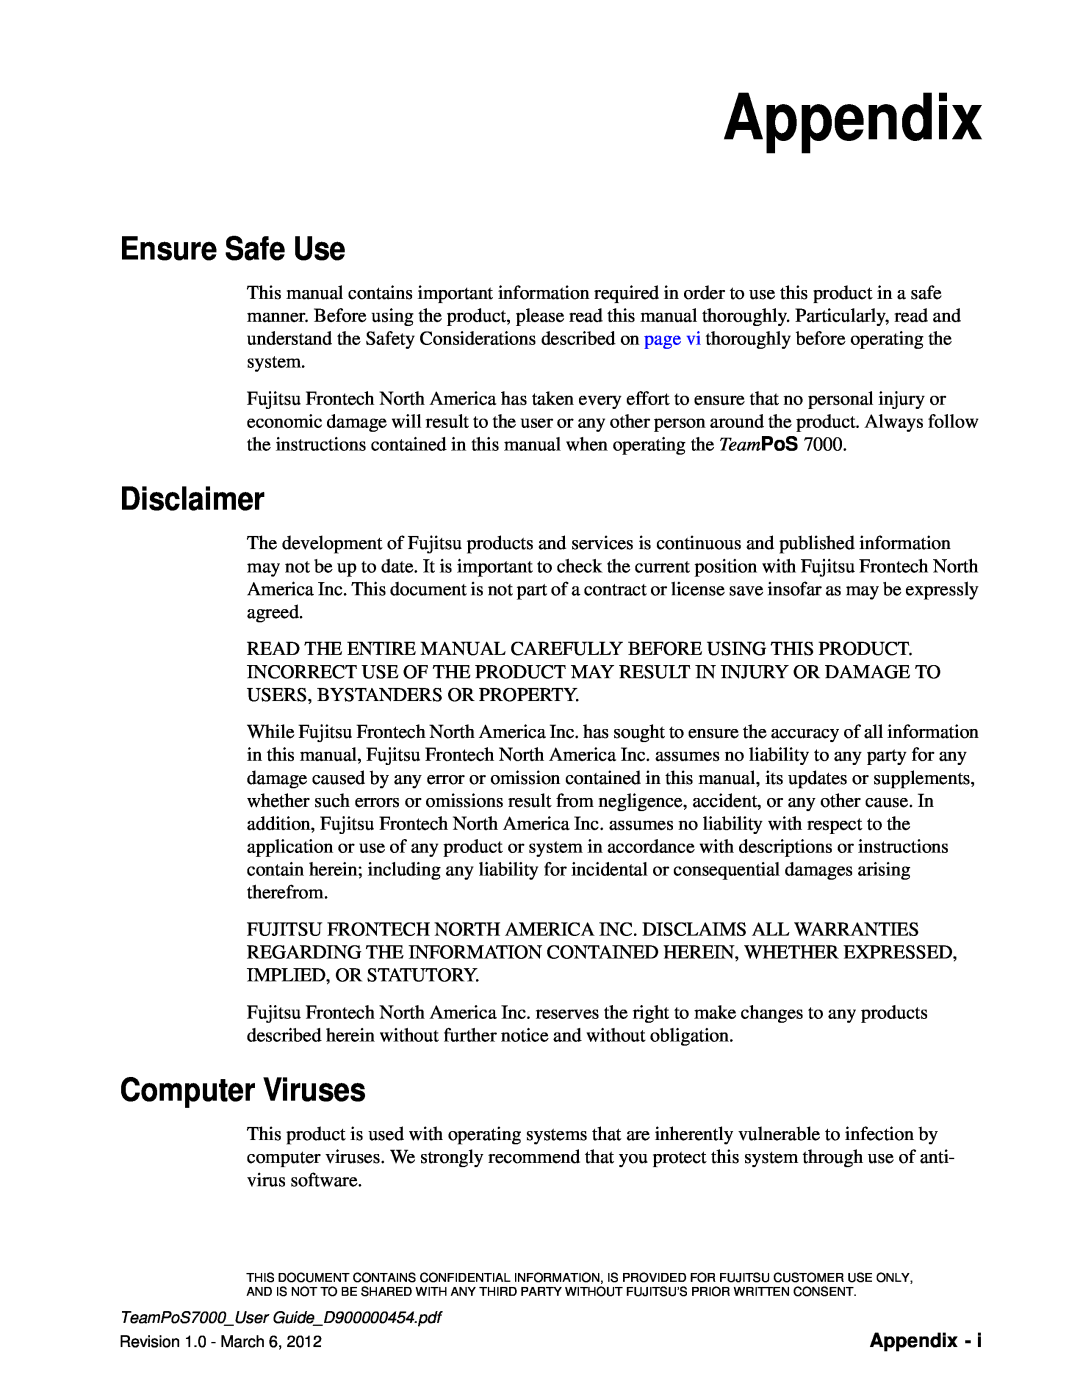 Fujitsu 7000 manual Appendix, Ensure Safe Use, Disclaimer, Computer Viruses 